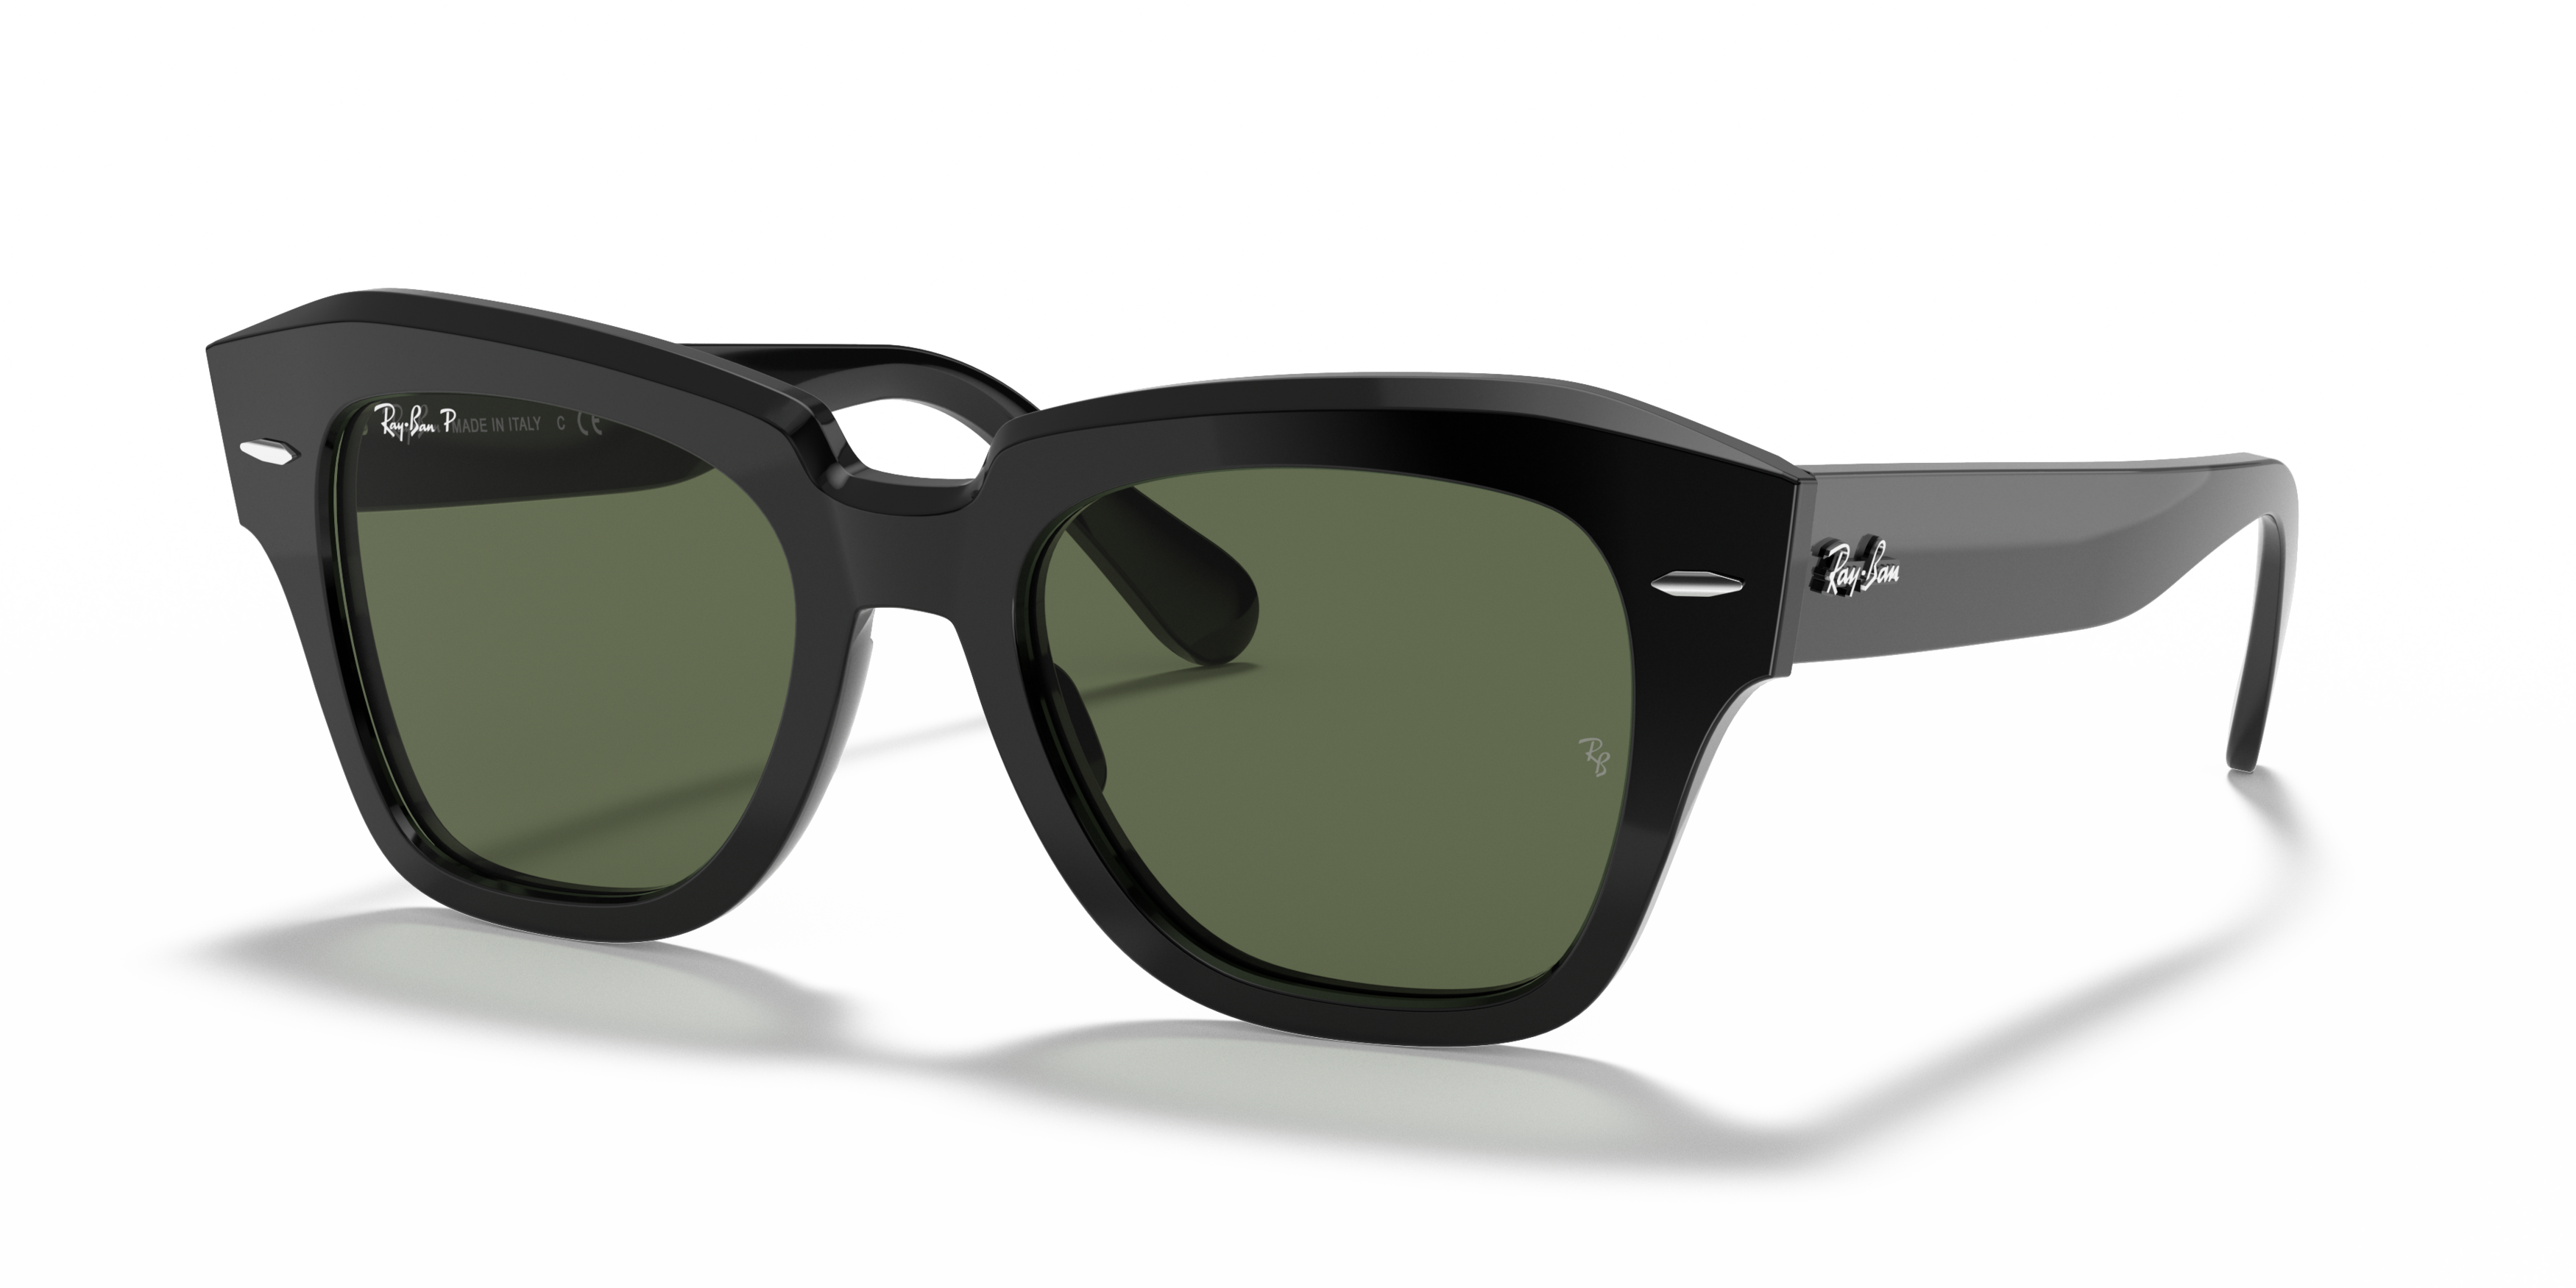 Angle_Left01 Ray-Ban RB 2186 (901/58) Sunglasses Green / Black